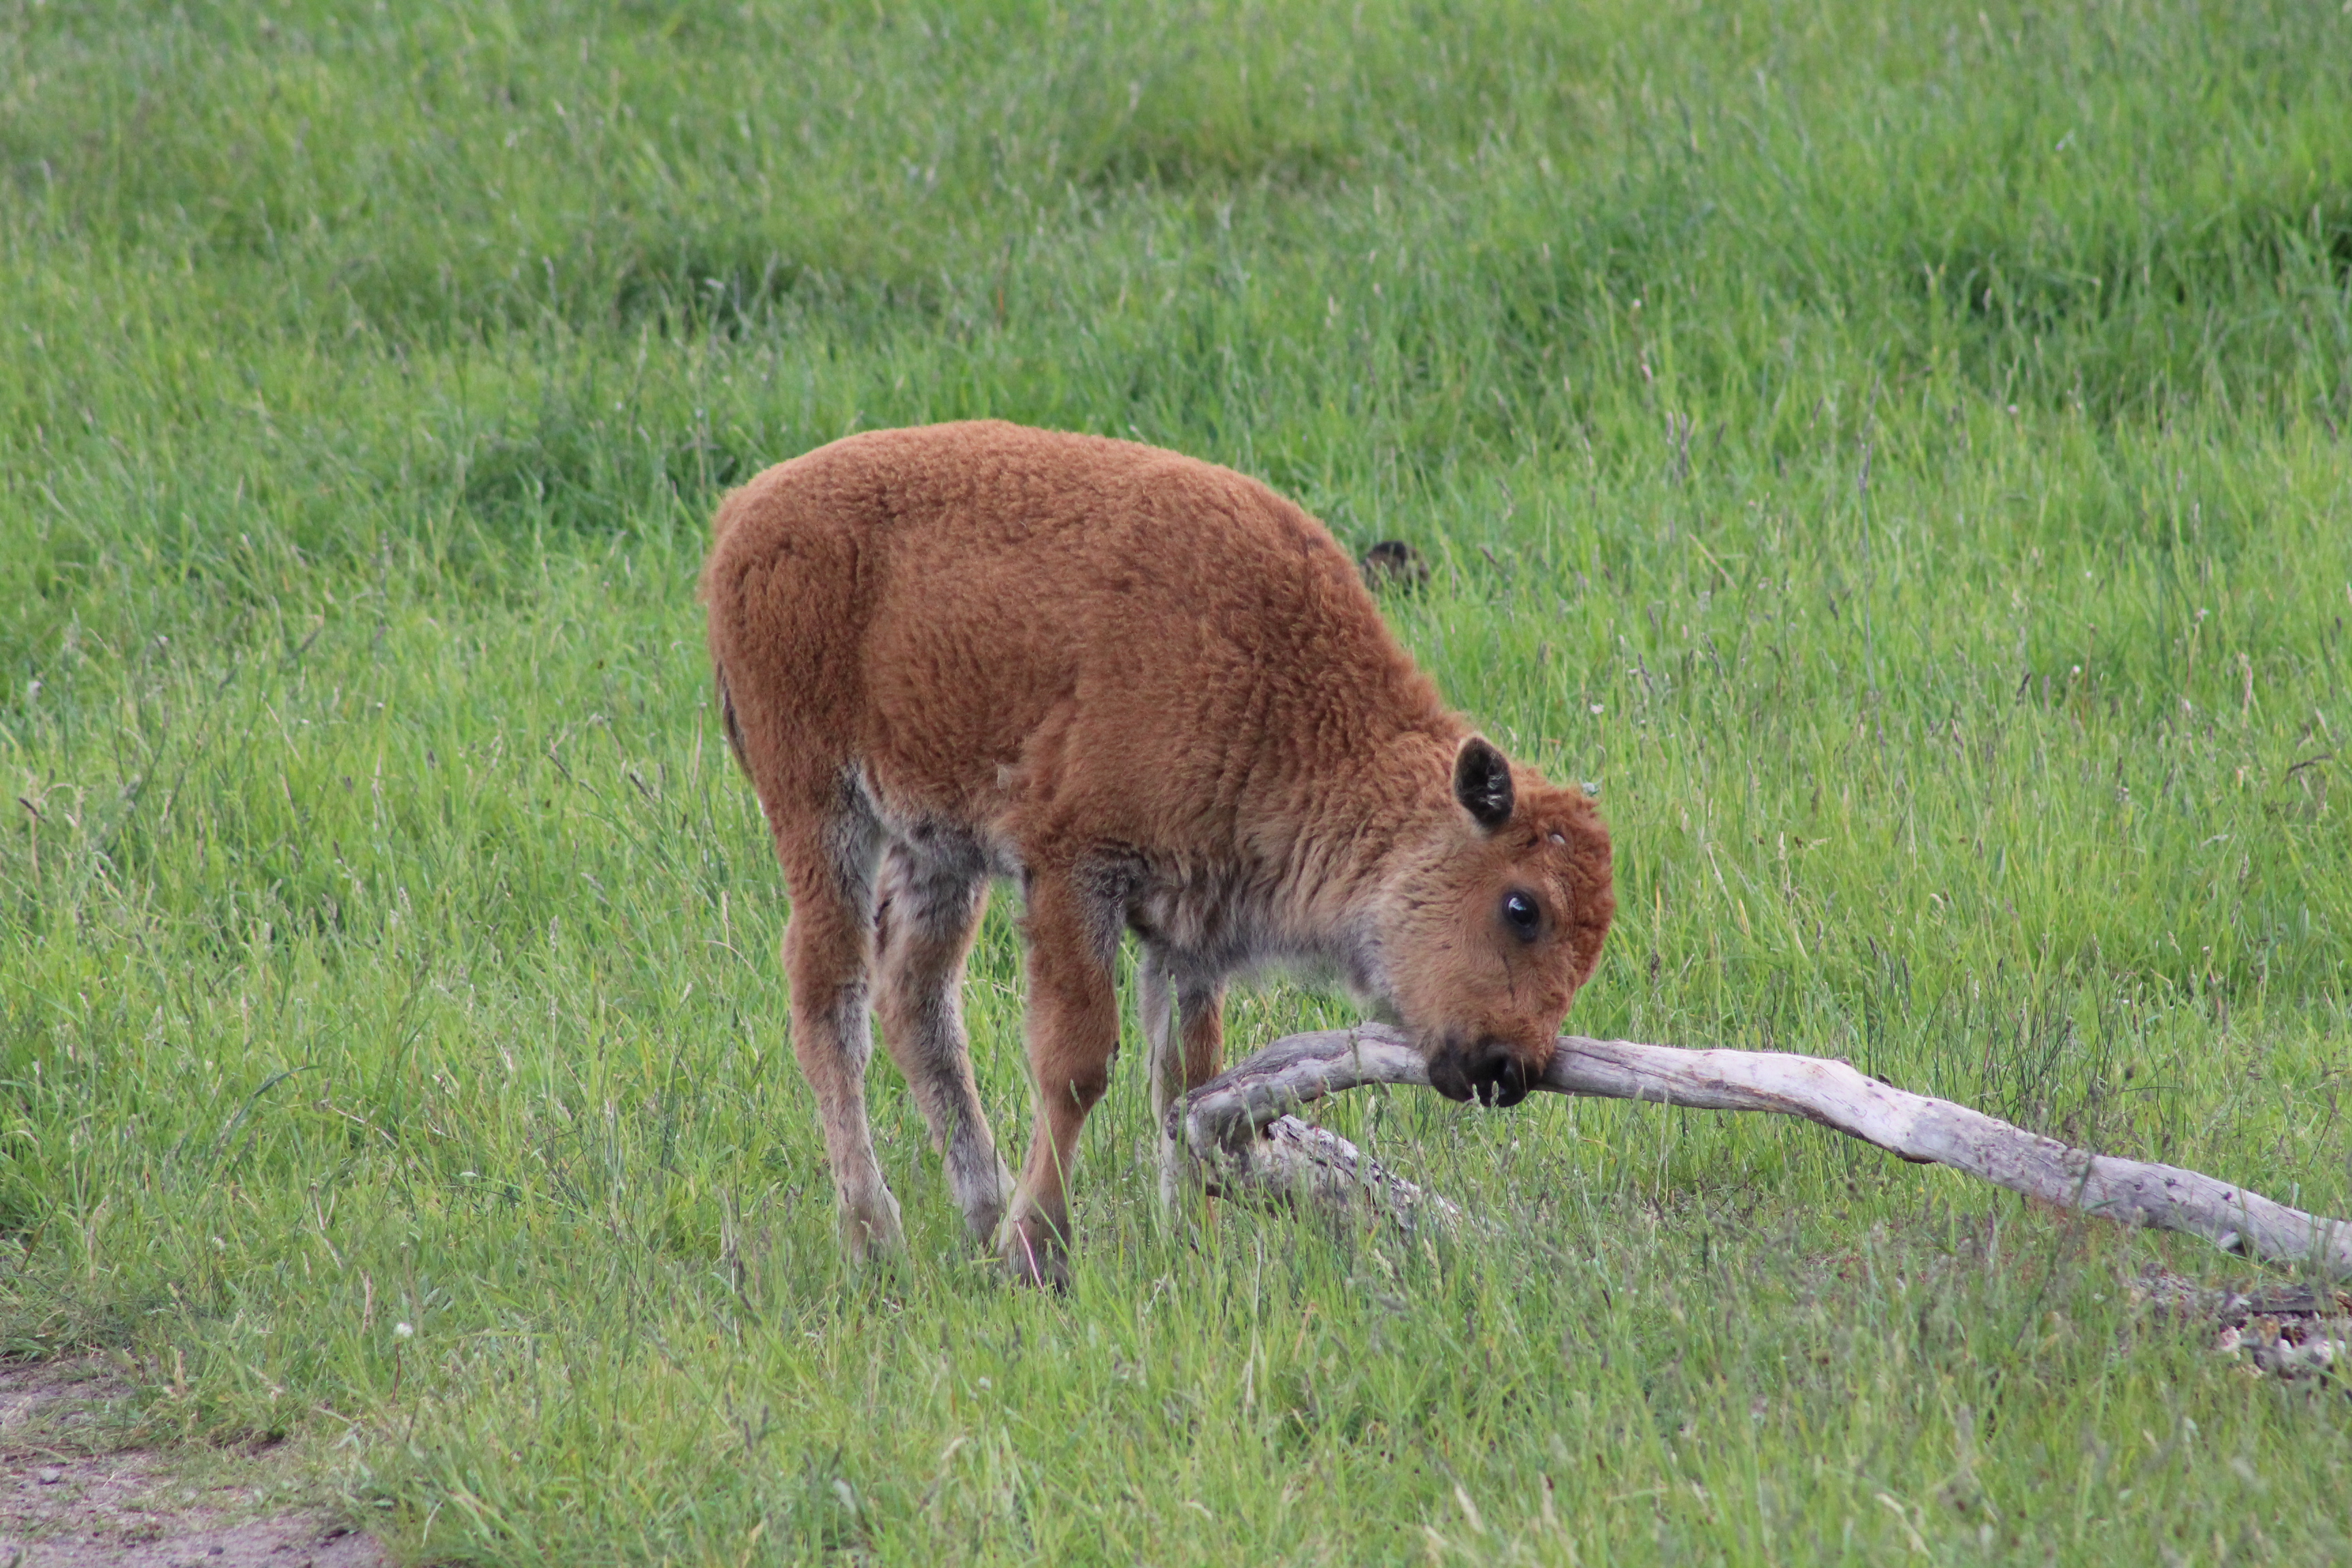 File:Baby Buffalo itching itself on - Wikimedia Commons